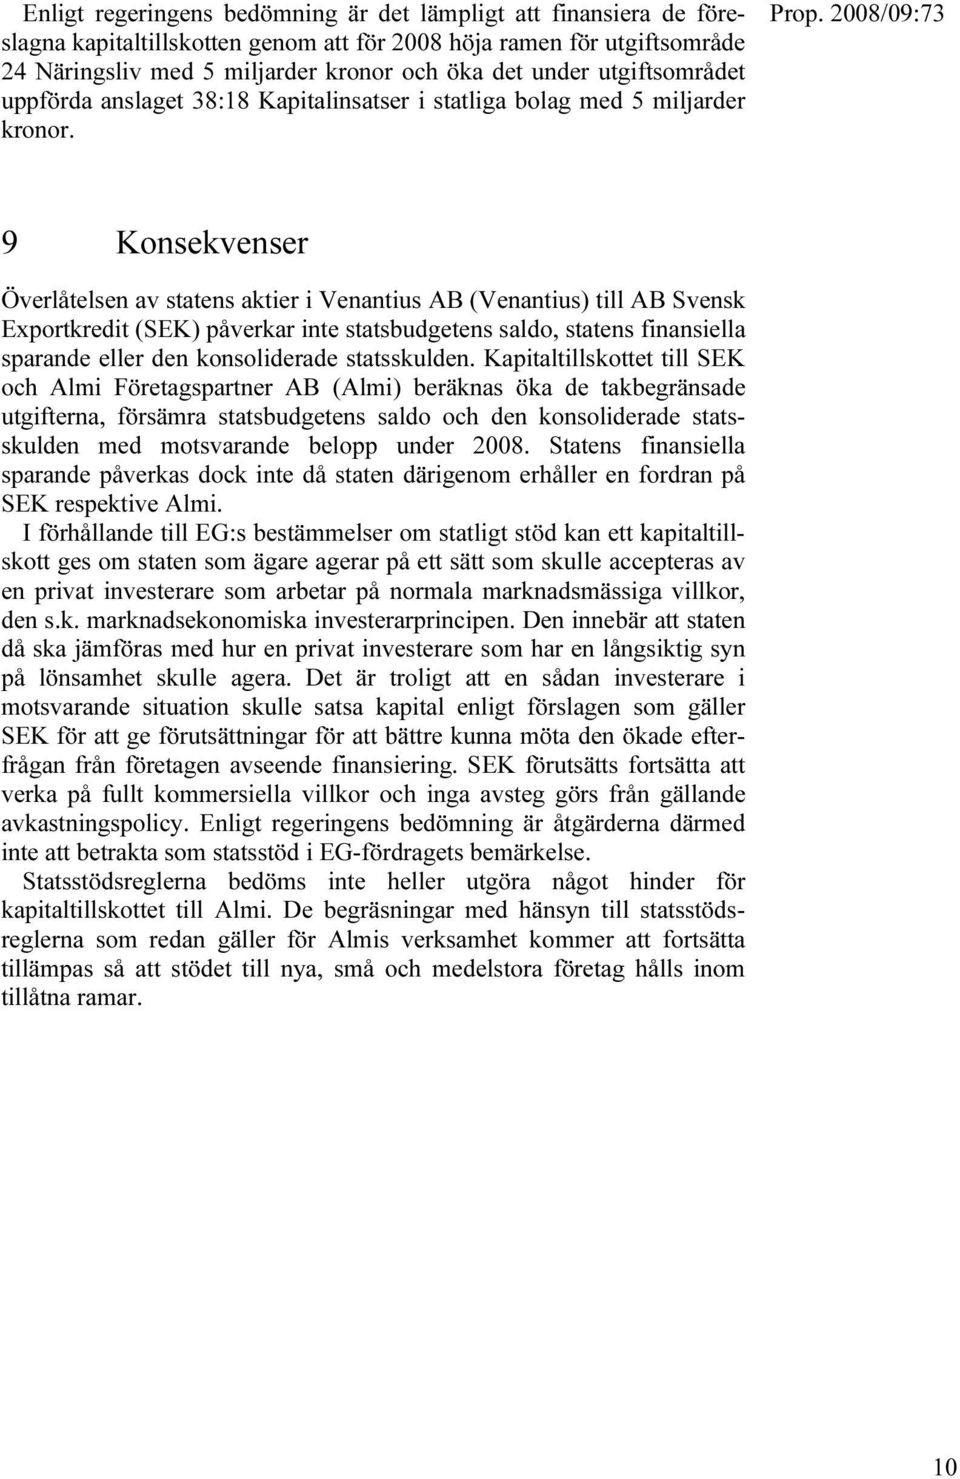 9 Konsekvenser Överlåtelsen av statens aktier i Venantius AB (Venantius) till AB Svensk Exportkredit (SEK) påverkar inte statsbudgetens saldo, statens finansiella sparande eller den konsoliderade